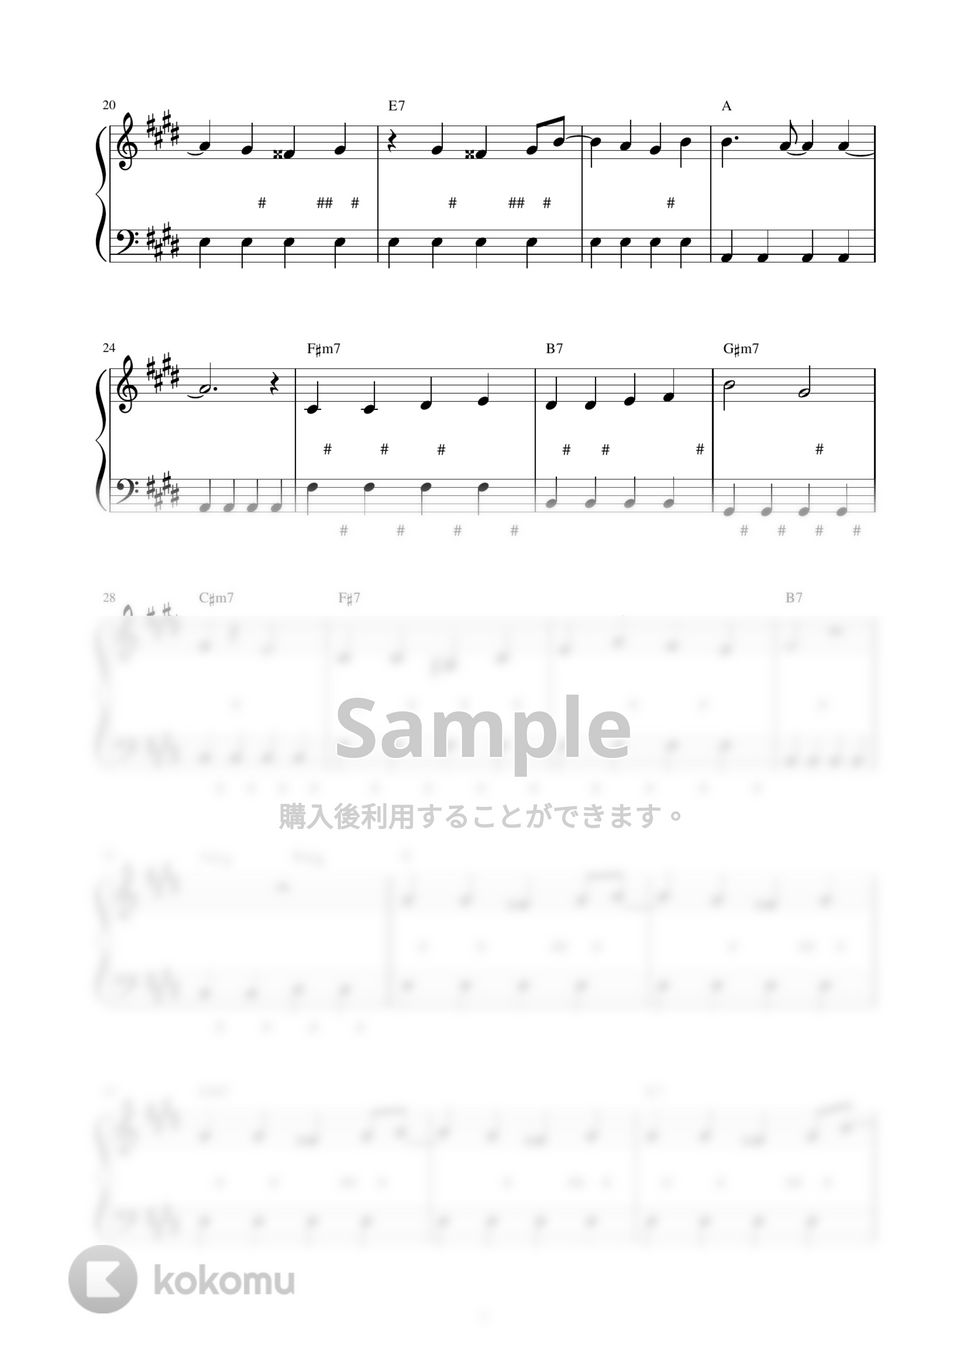 プリンセス プリンセス - Diamonds (ピアノ楽譜 / かんたん両手 / 歌詞付き / ドレミ付き / 初心者向き) by piano.tokyo